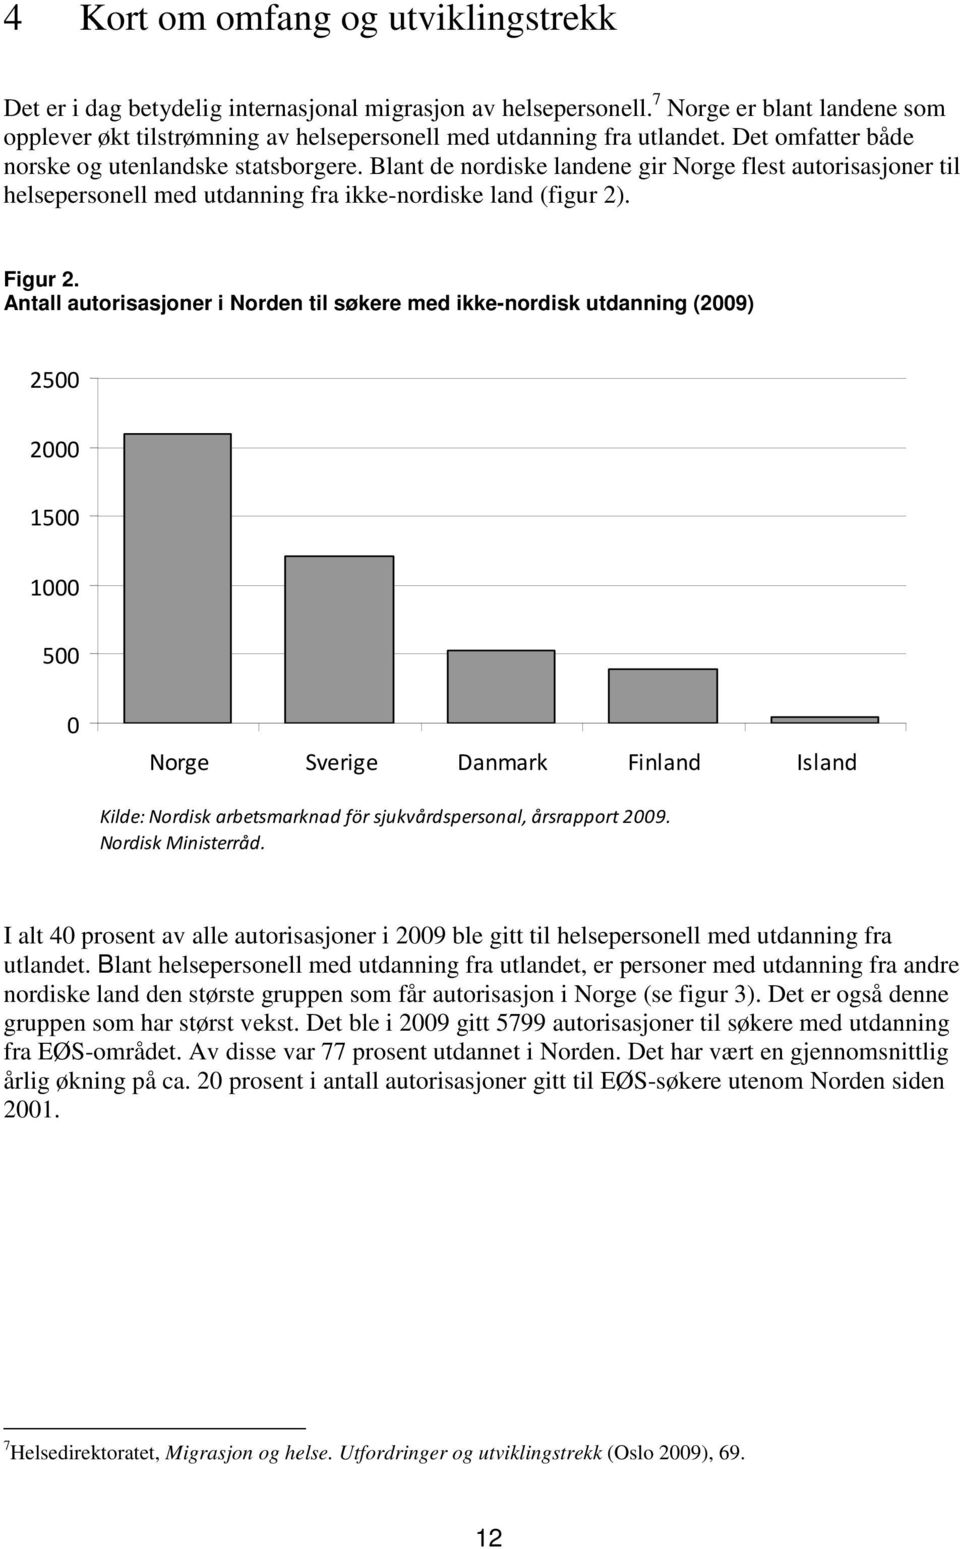 Blant de nordiske landene gir Norge flest autorisasjoner til helsepersonell med utdanning fra ikke-nordiske land (figur 2). Figur 2.